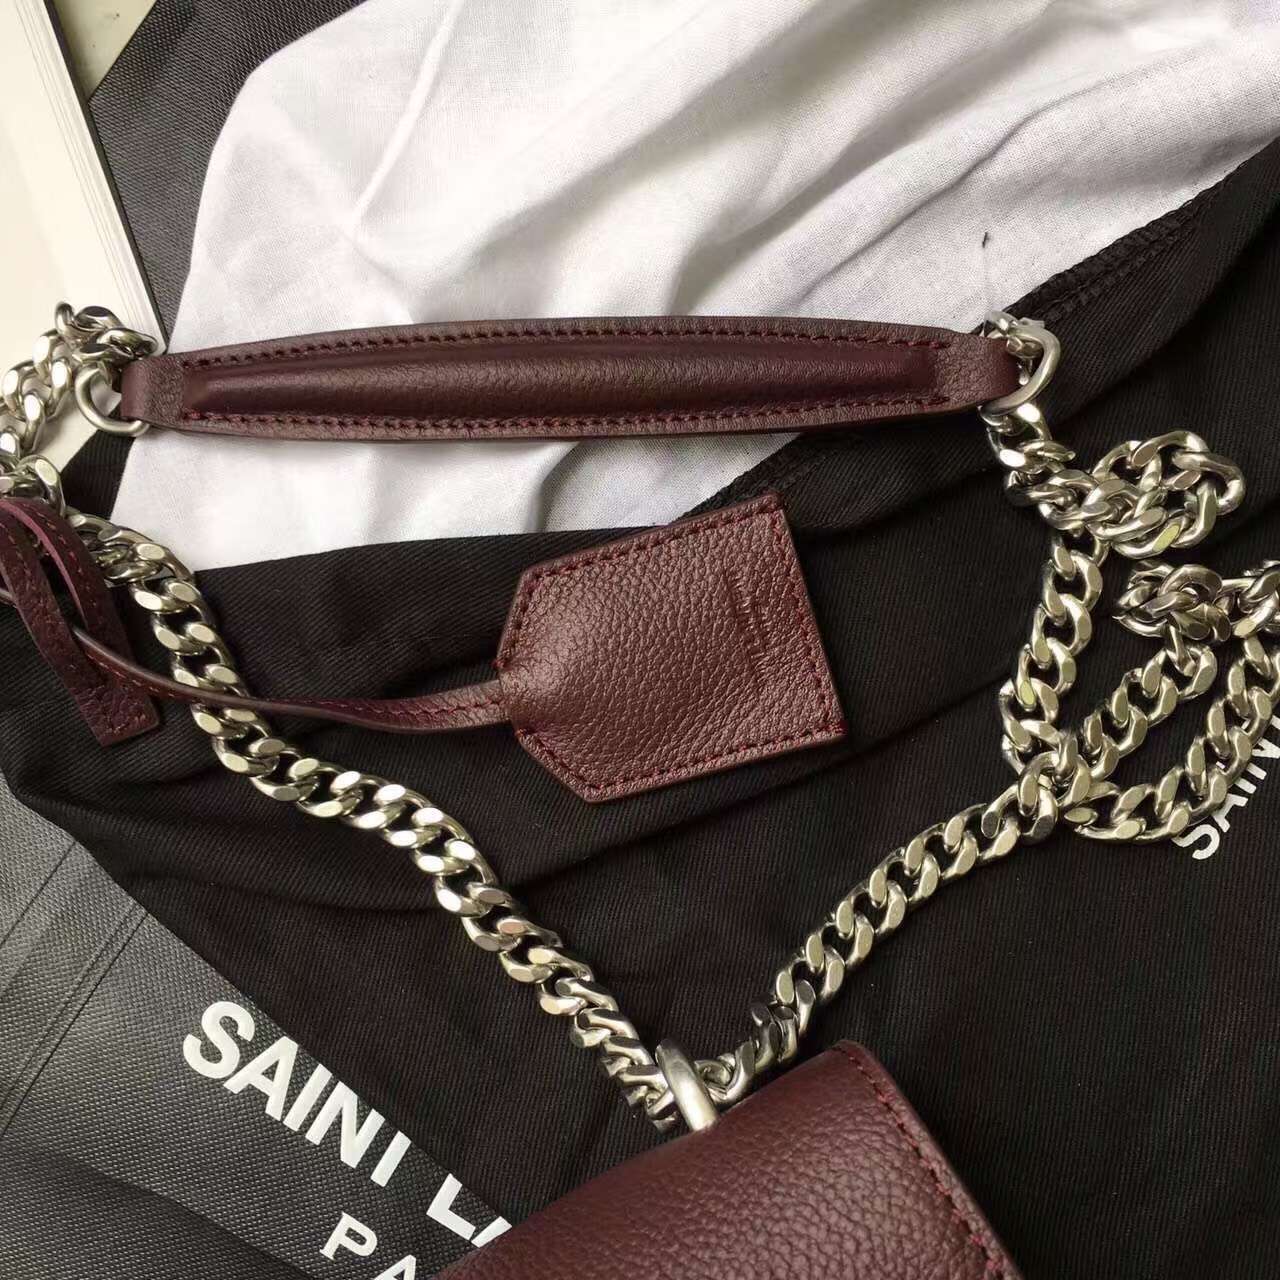 Limited Edition!2016 Saint Laurent Bags Cheap Sale-Saint Laurent Medium Sunset Monogram Bag in Bordeaux Grained Leather - Click Image to Close